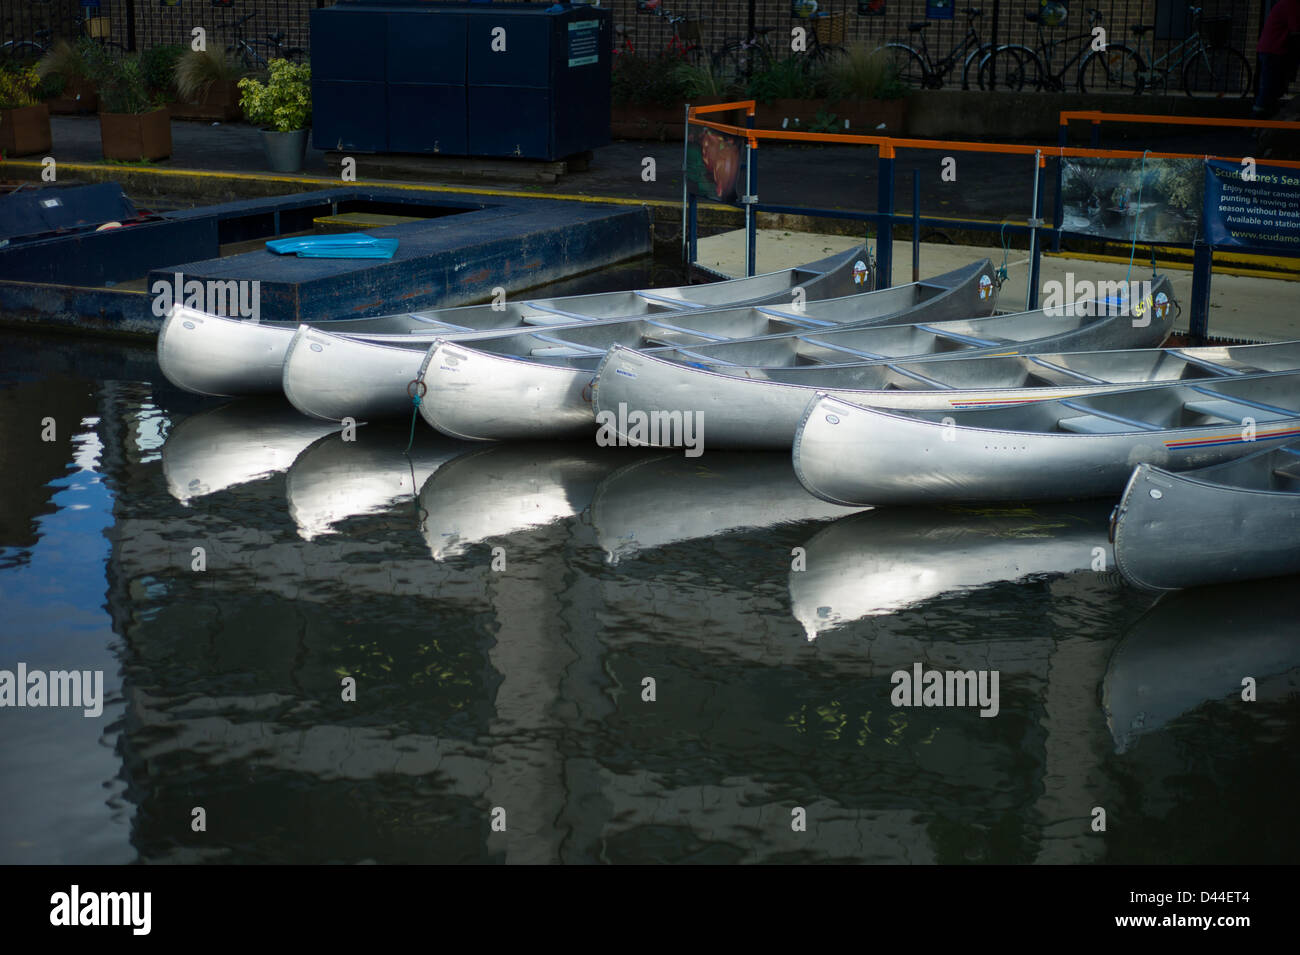 Canoas de aluminio, Río Cam, Cambridge, Inglaterra, Octubre 2012 Canoas en espera de estudiantes y visitantes de jugando en el río Foto de stock